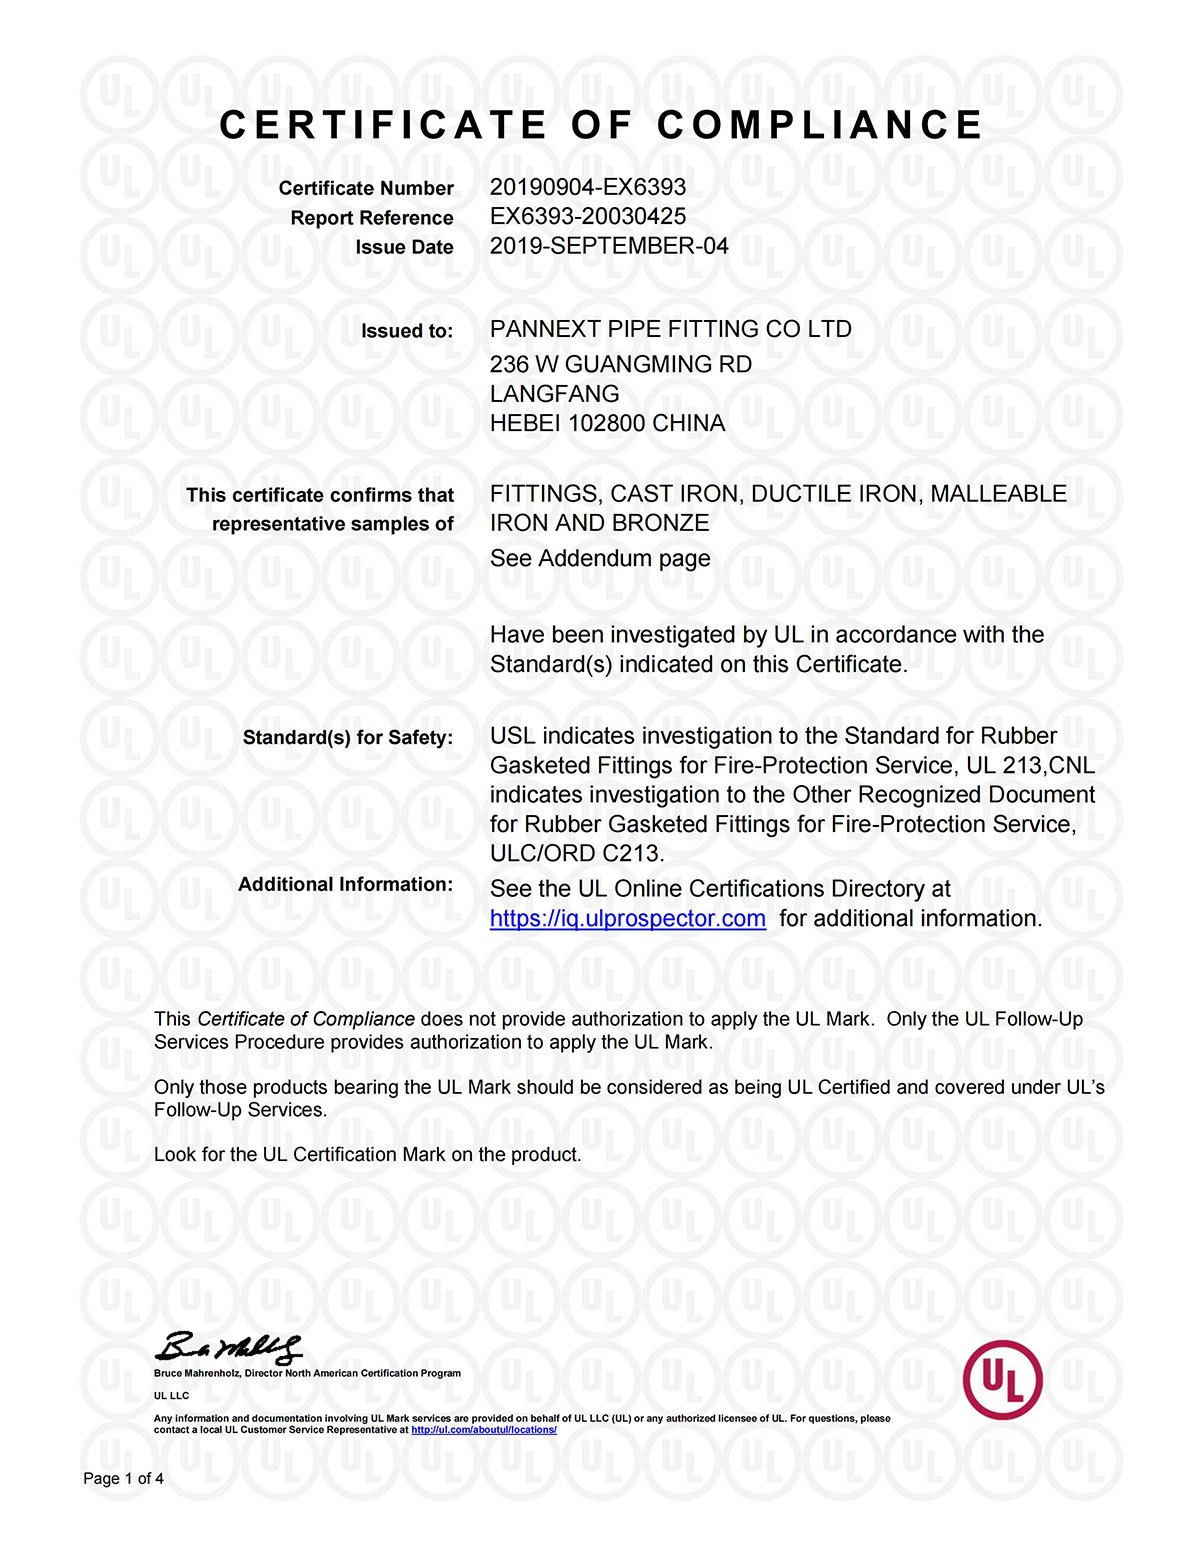 UL сертификаты3-0